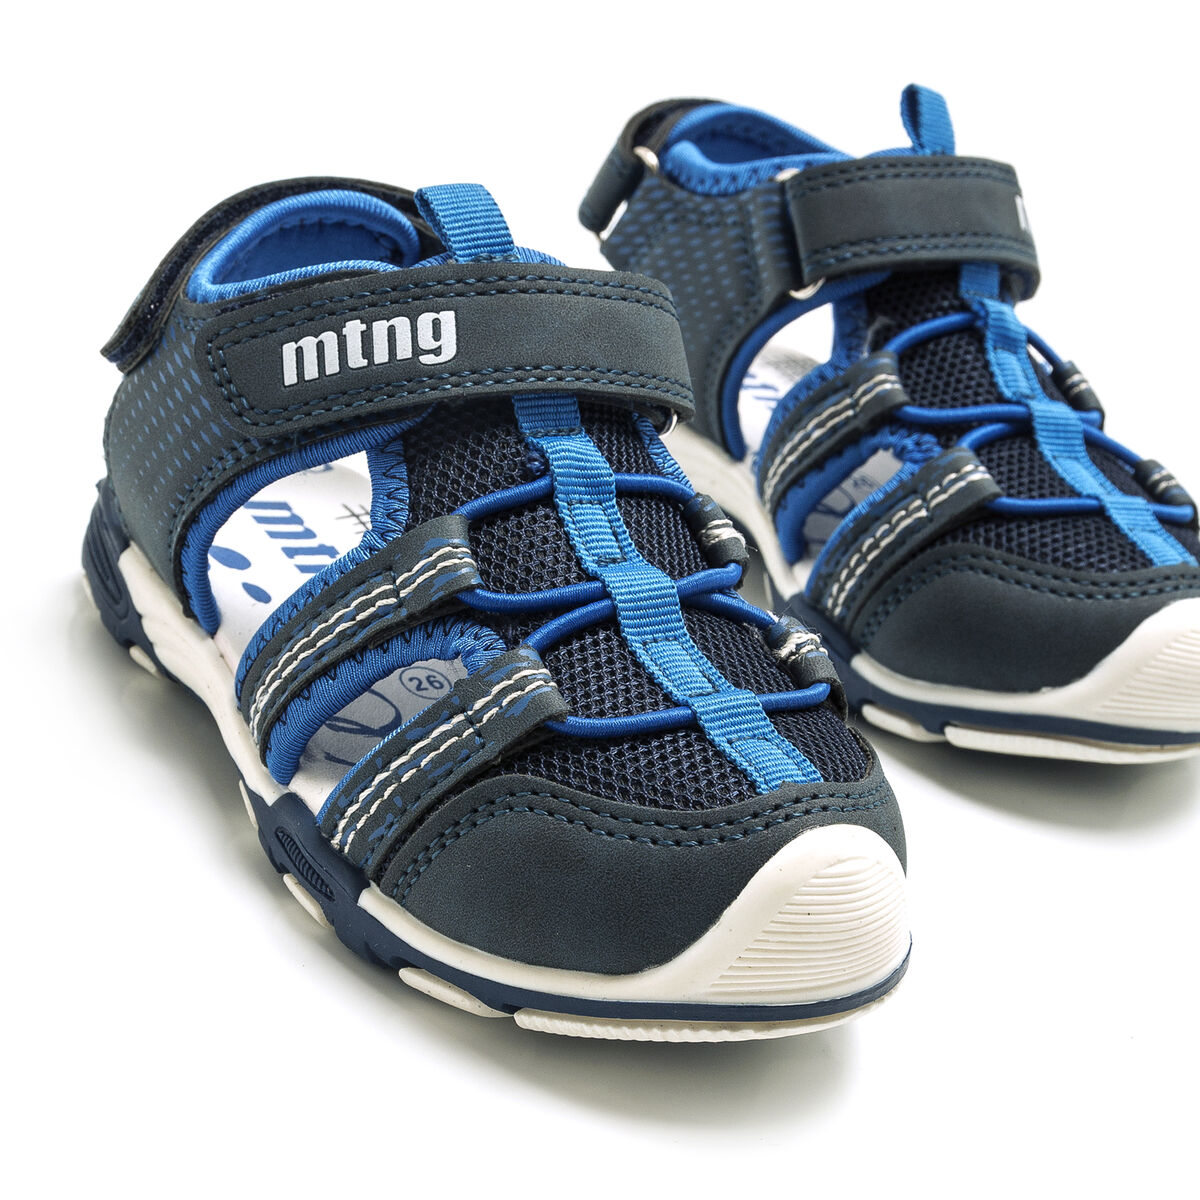 Sandalias de Nino modelo RIVER de MTNG image number 4